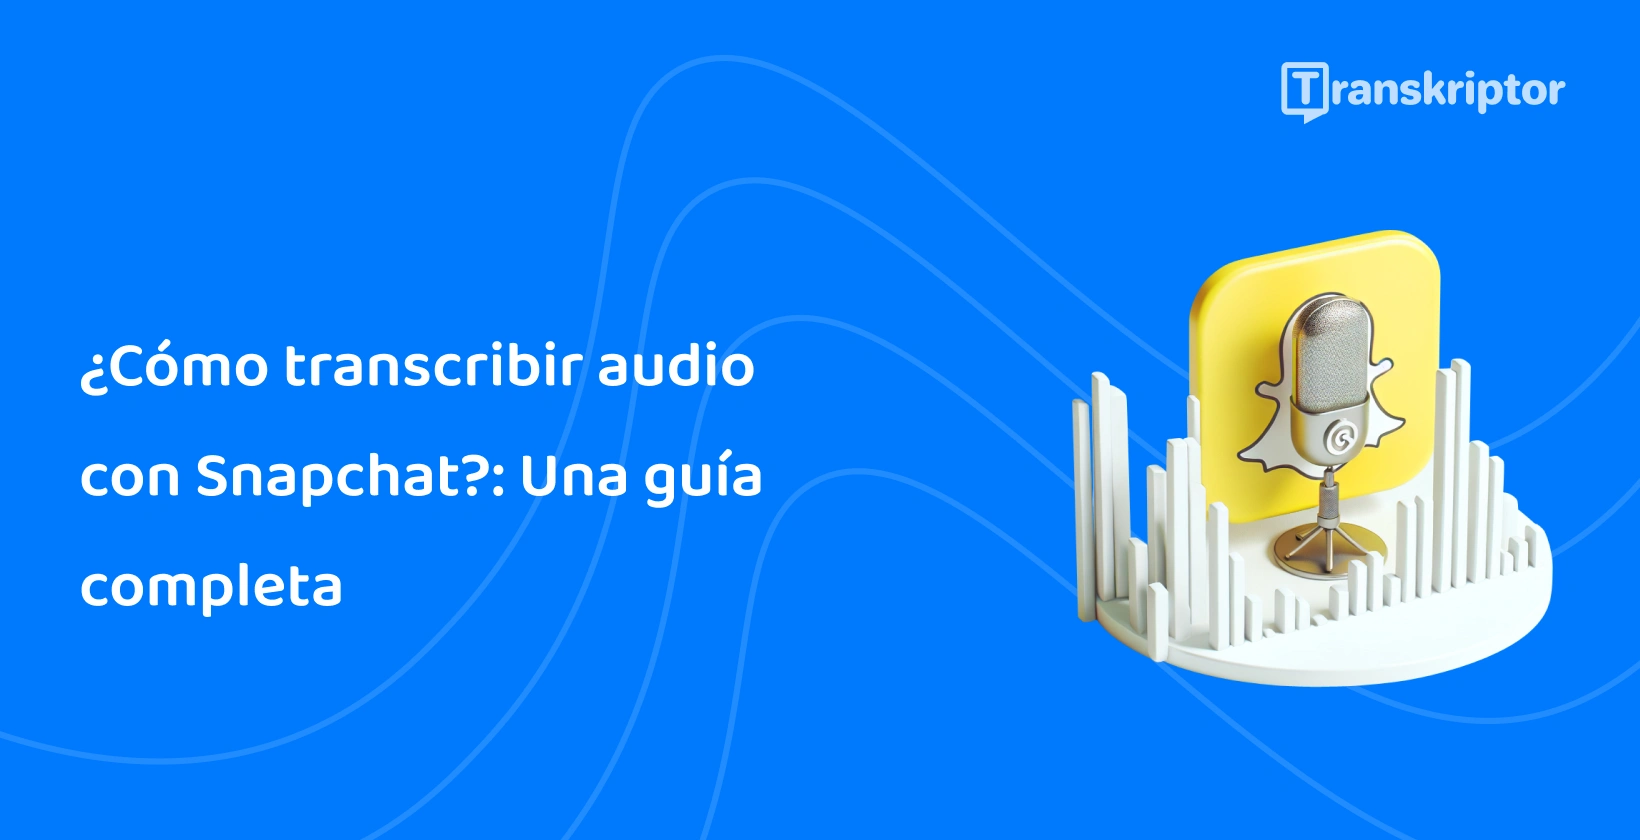 Icono de micrófono y fantasma de Snapchat que simboliza la guía de transcripción de audio de Transkriptor.